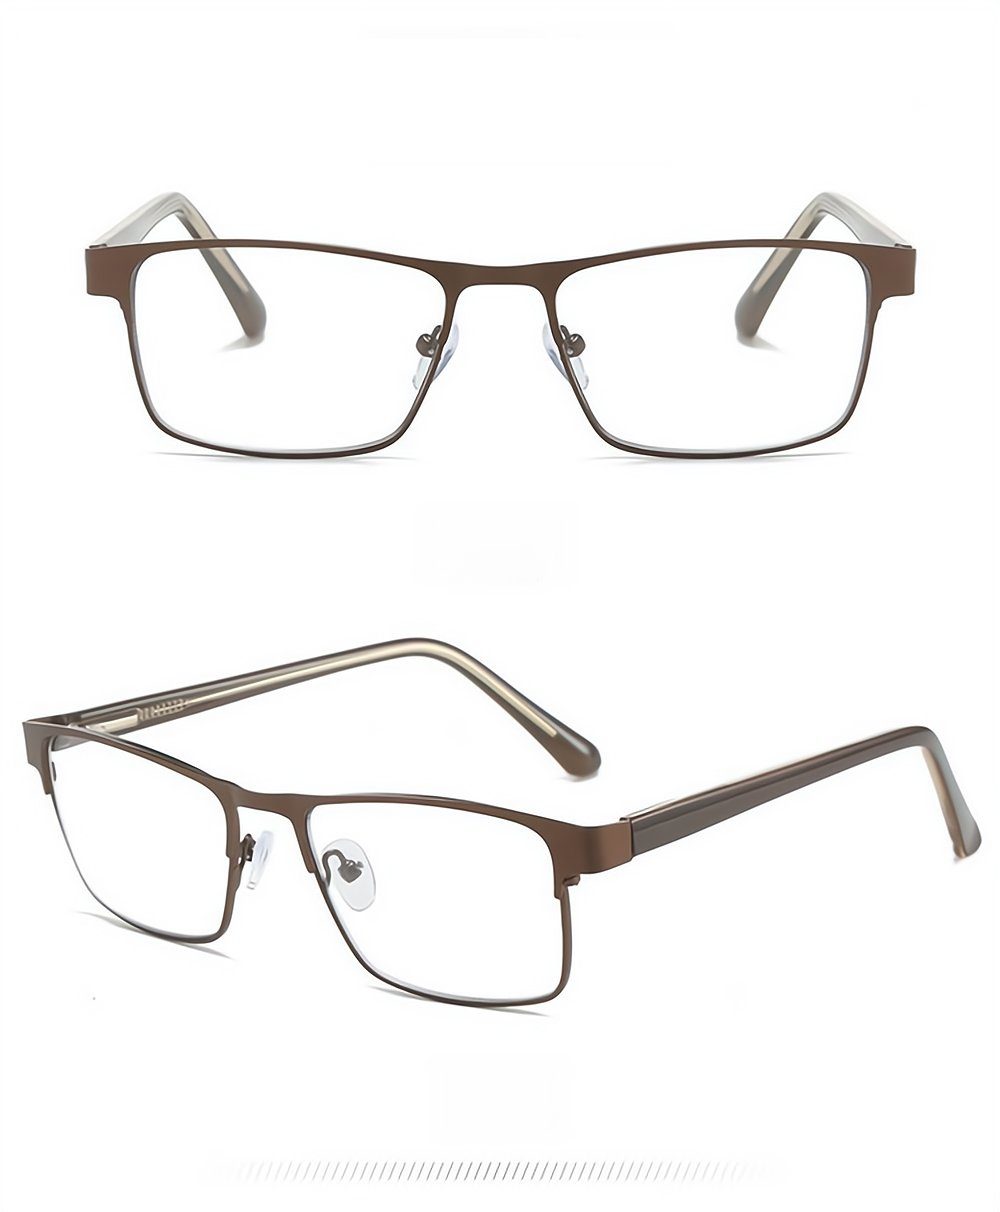 PACIEA Lesebrille Mode bedruckte Rahmen braun anti blaue presbyopische Gläser